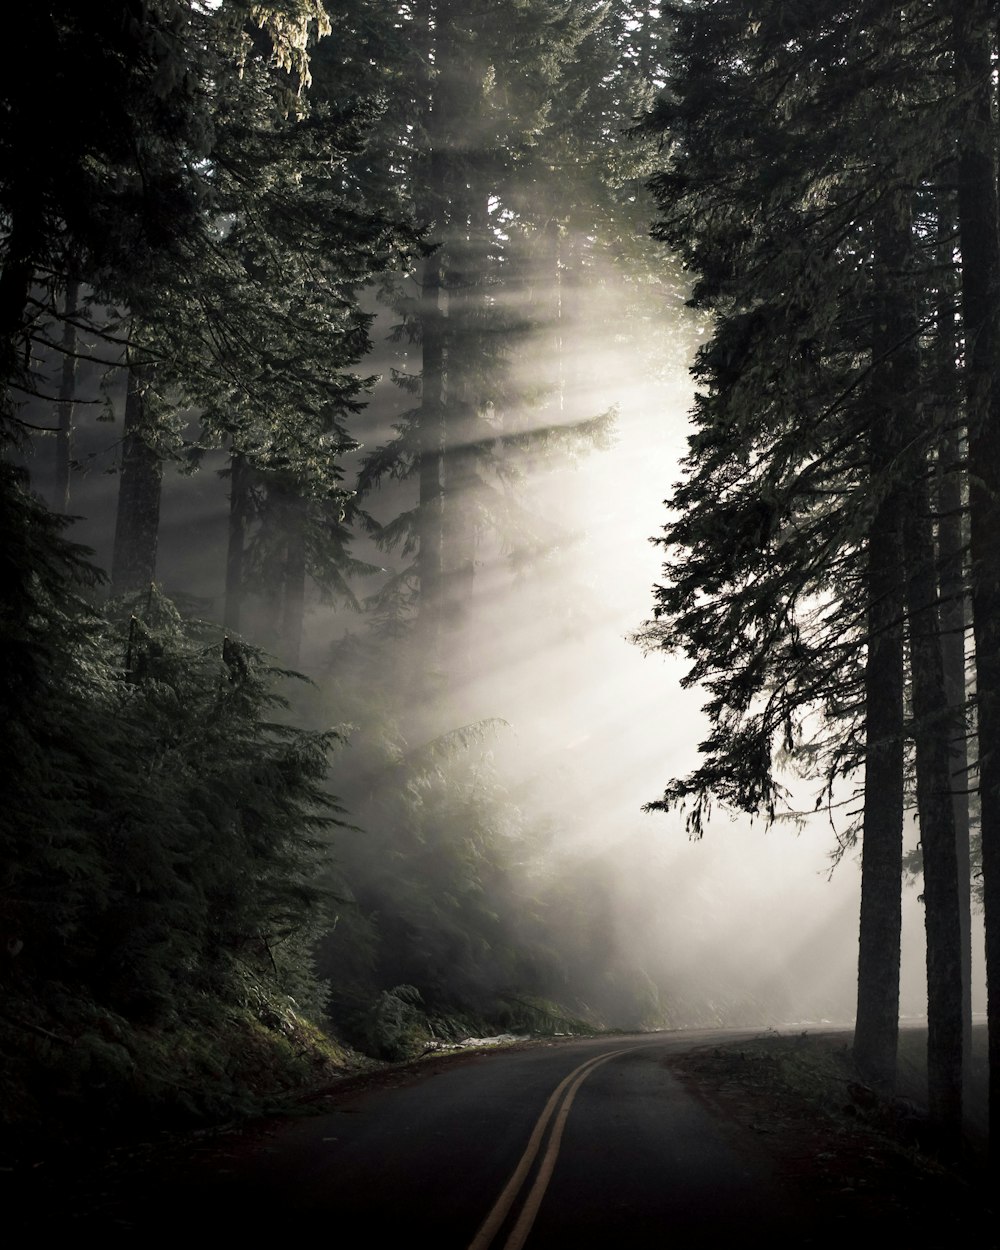 曲がりくねった道沿いの鬱蒼とした森を通り抜ける太陽の光